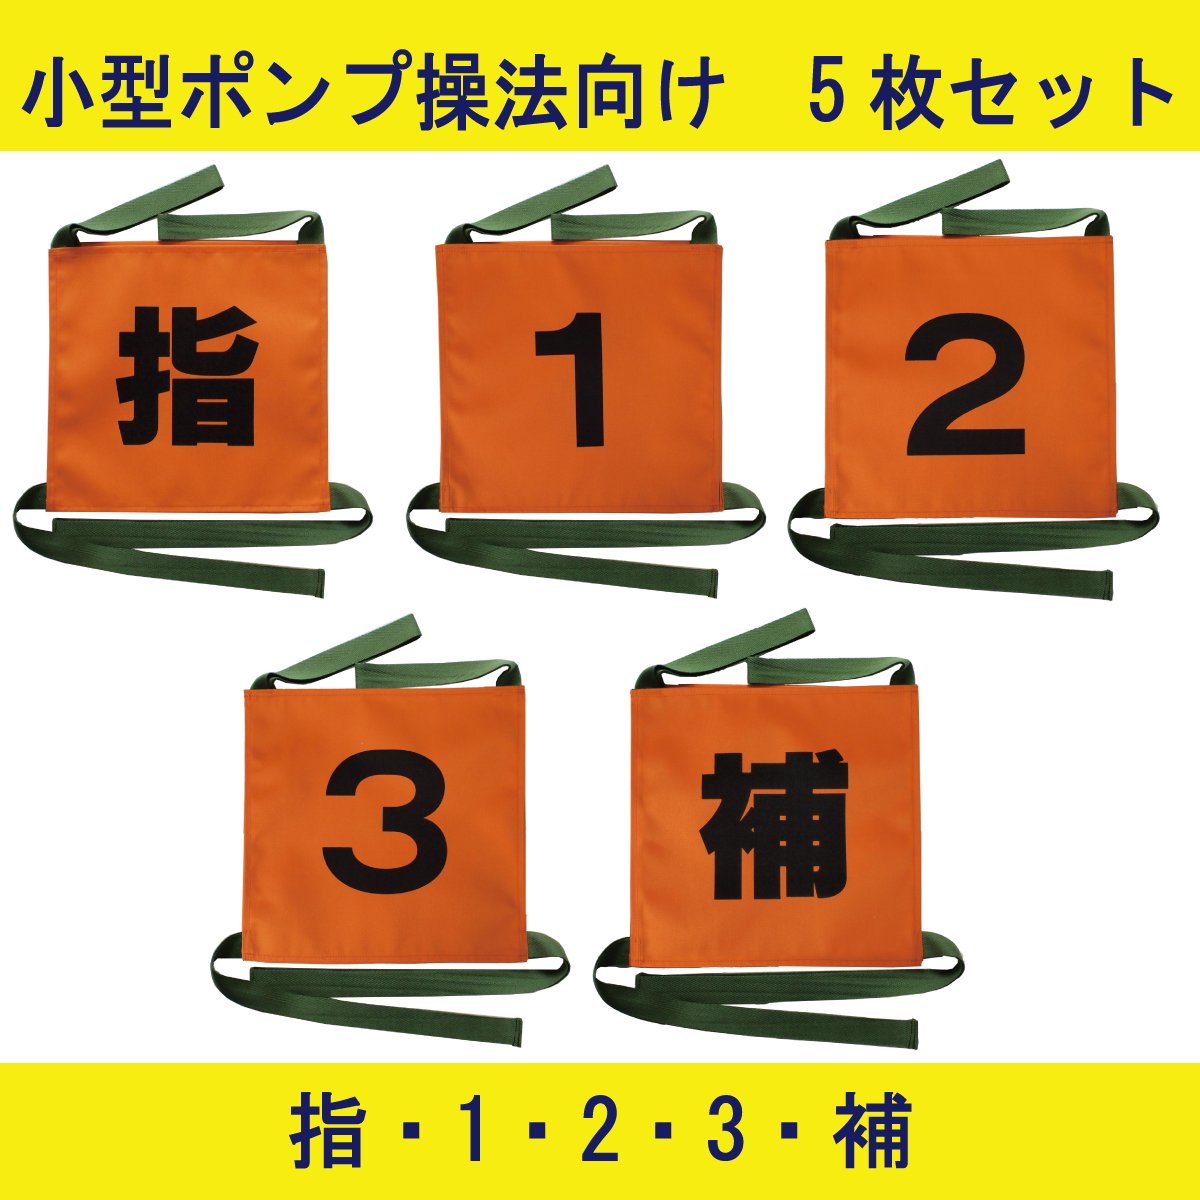 【旧デザイン】操法用ゼッケン 5枚セット【指・1・2・3・補】オレンジ 【画像3】